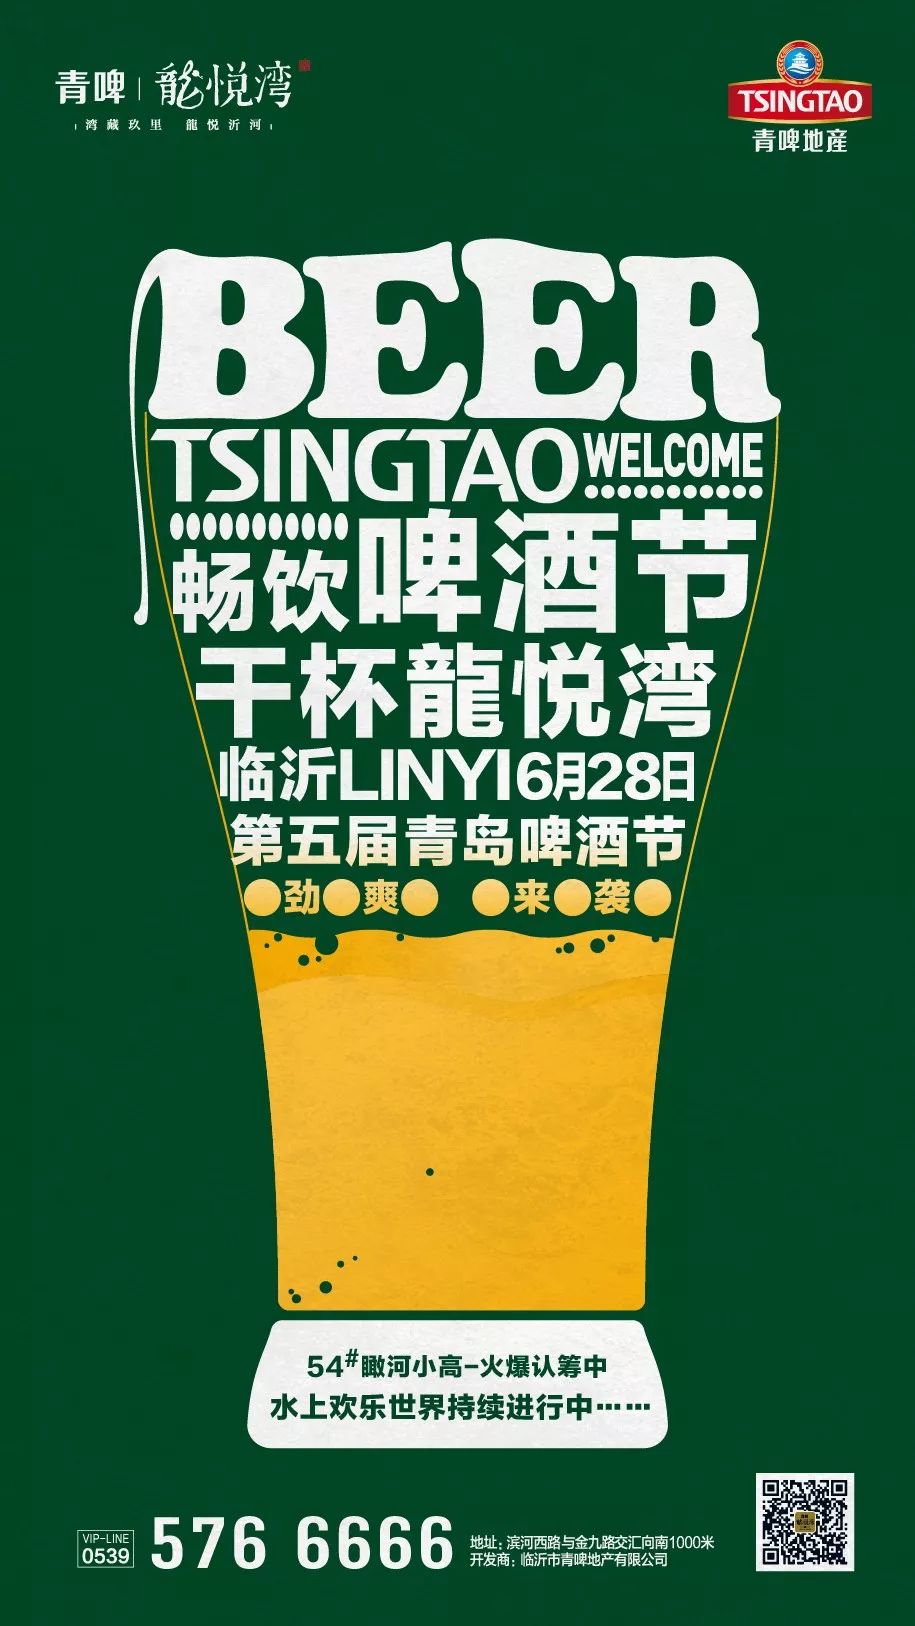 临沂市第五届青岛啤酒节将于6月28日盛大开幕期待您的身影可以出现在